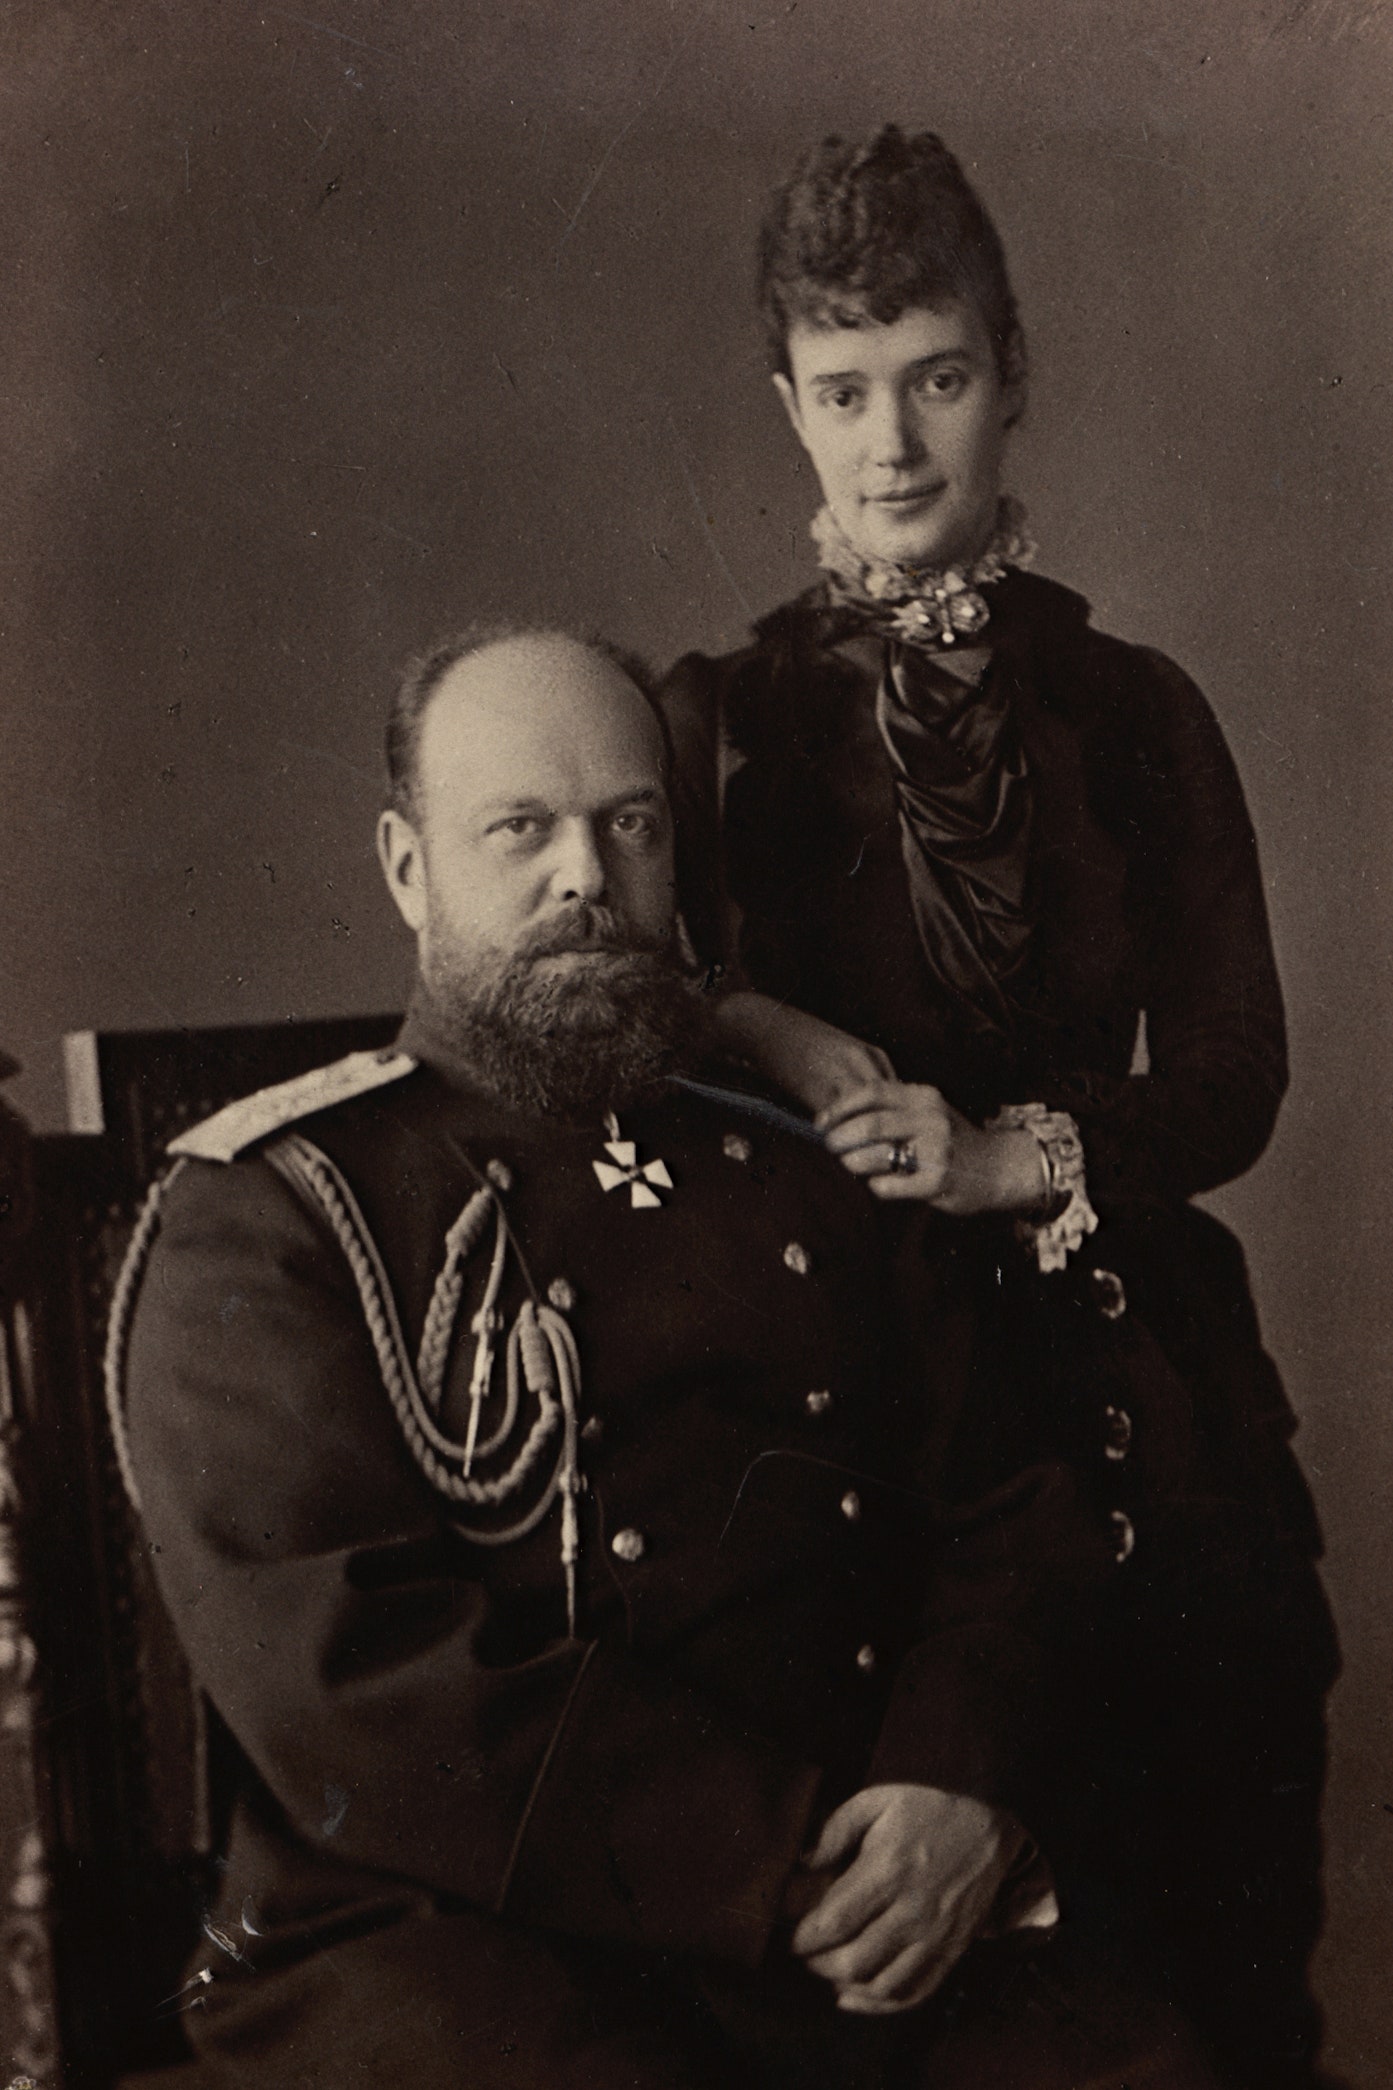 Мария Федоровна и ее гардероб а также Александр III в новом свете на выставке в Историческом музее